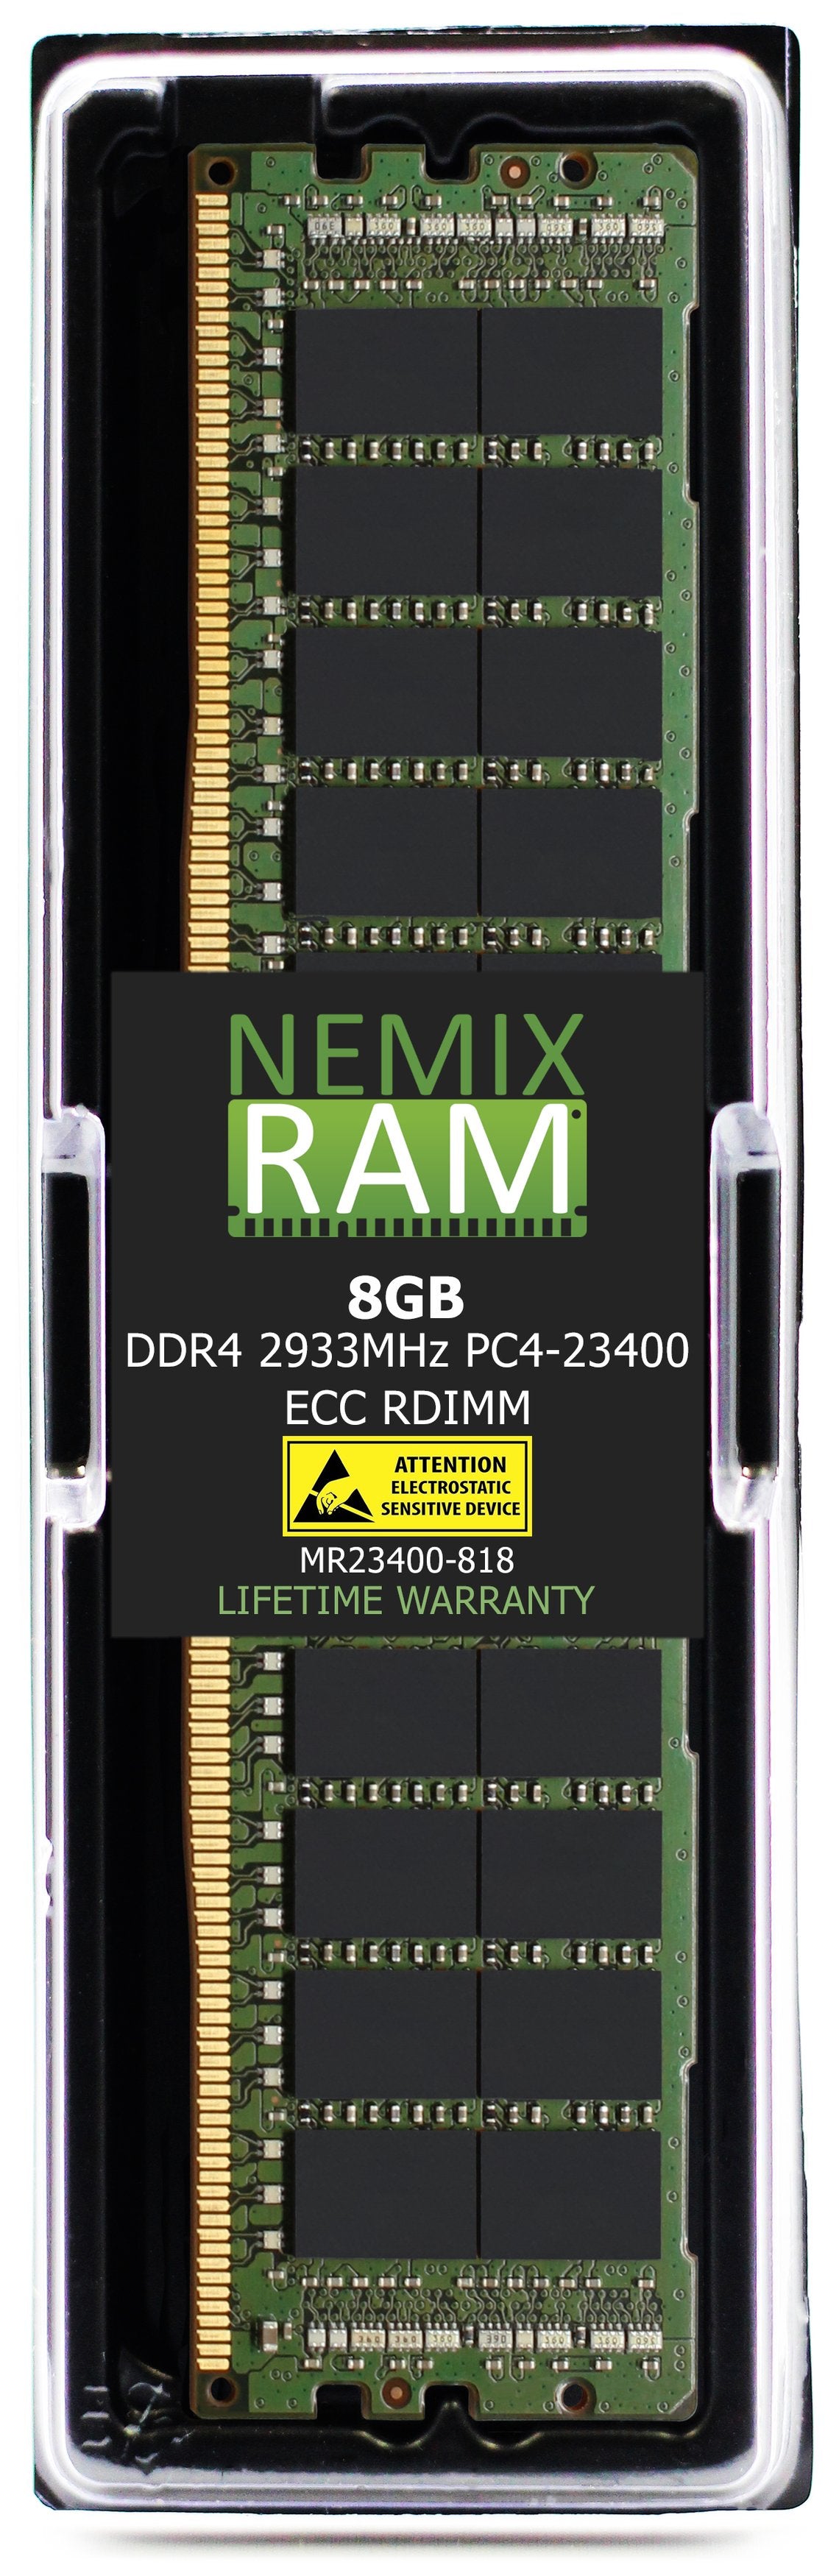 Hynix HMA81GR7CJR8N-WM 8GB DDR4 2933MHZ PC4-23400 RDIMM Compatible Memory Module